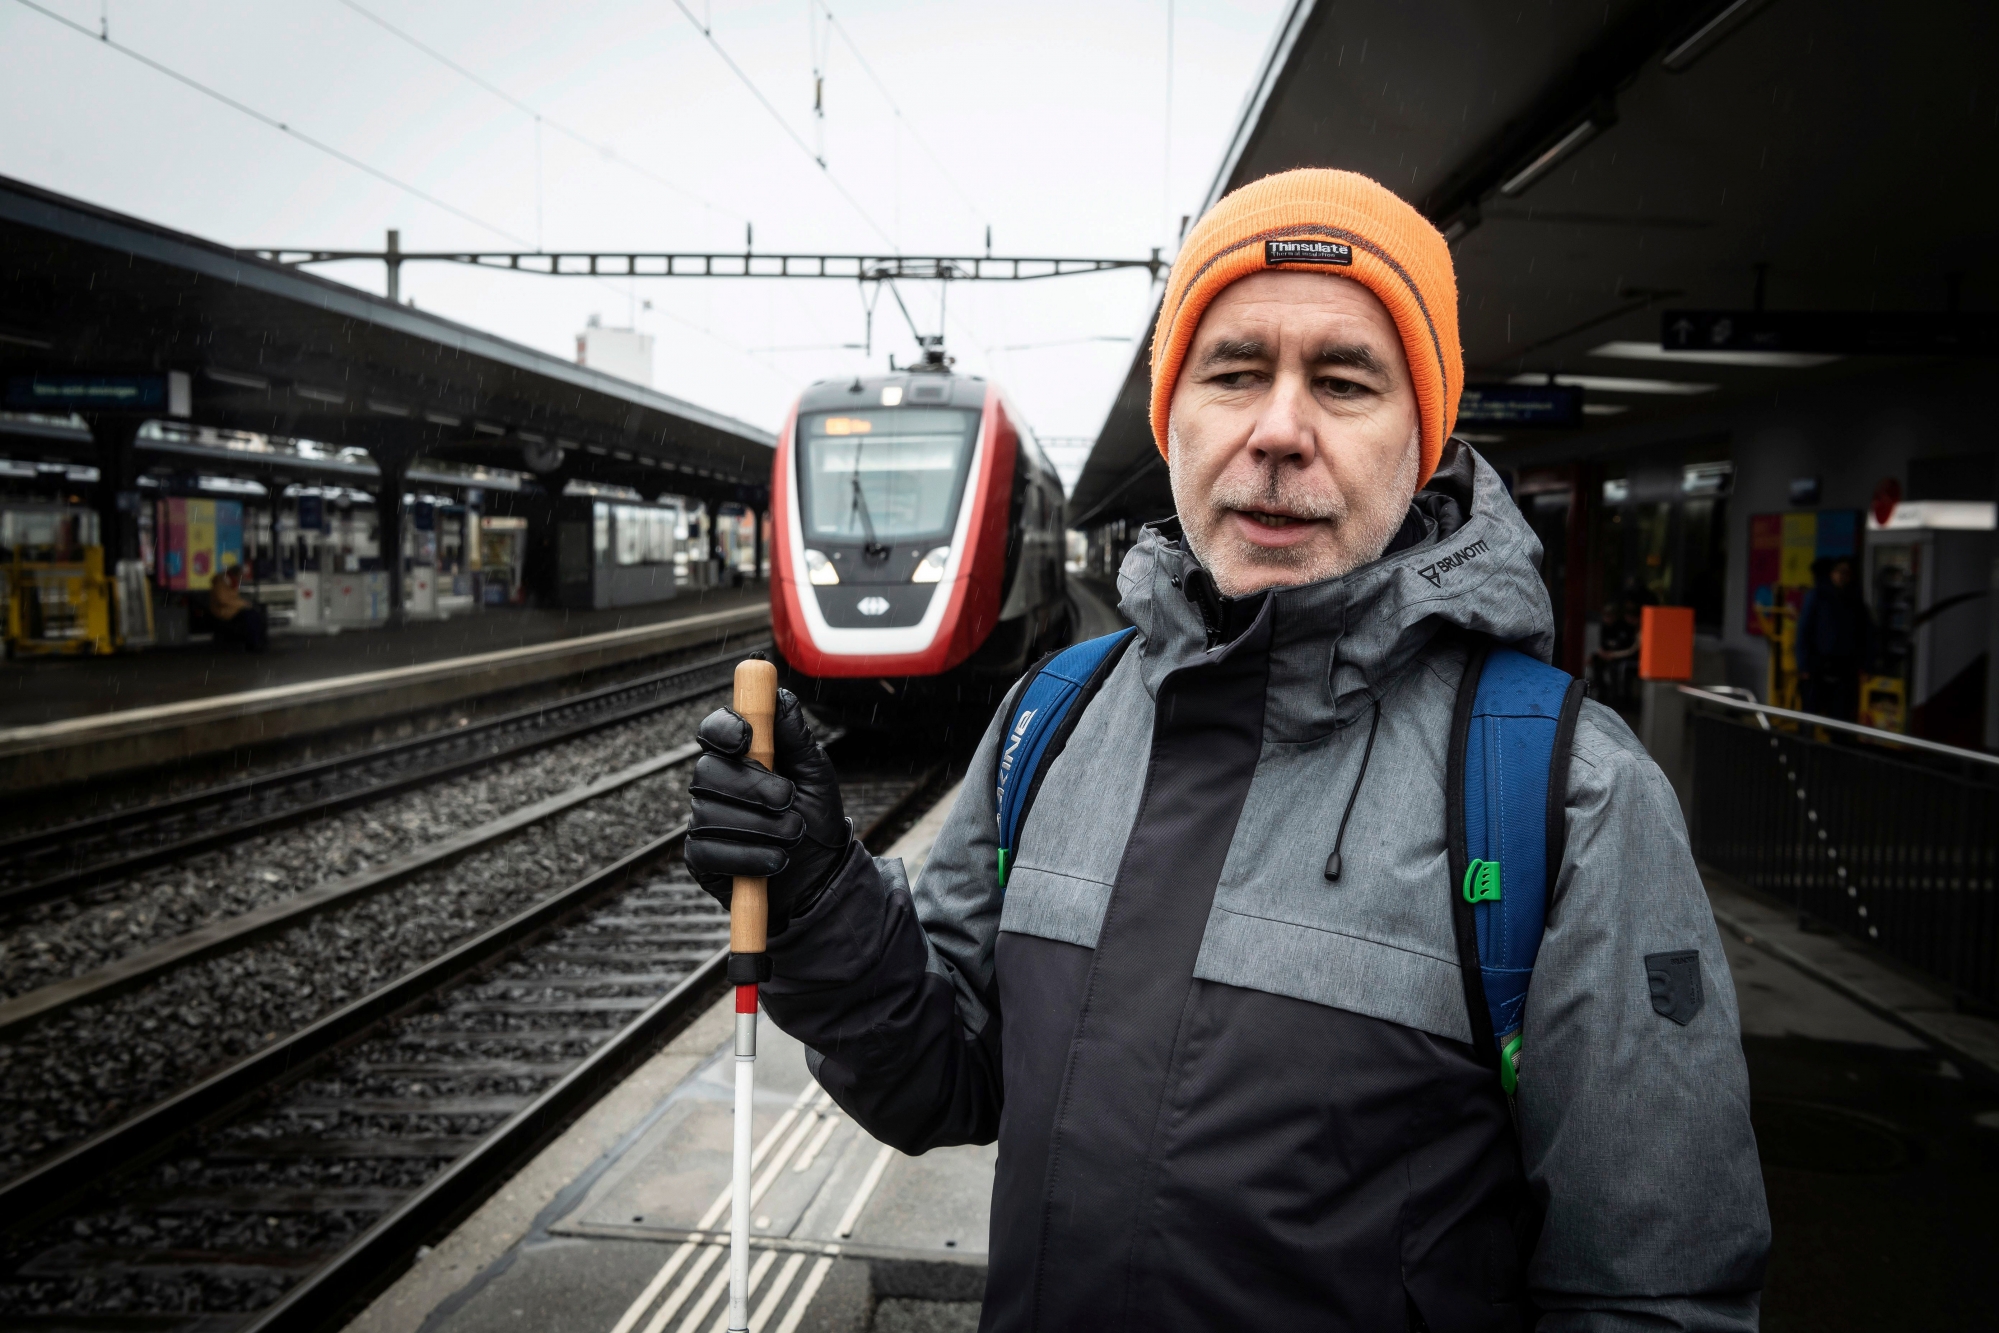 Accompagnement d'un aveugle, Gerd Bingemann, dans un des trains à problèmes des CFF
Photo Lib / Charly Rappo, St-Gall, 14.03.2019